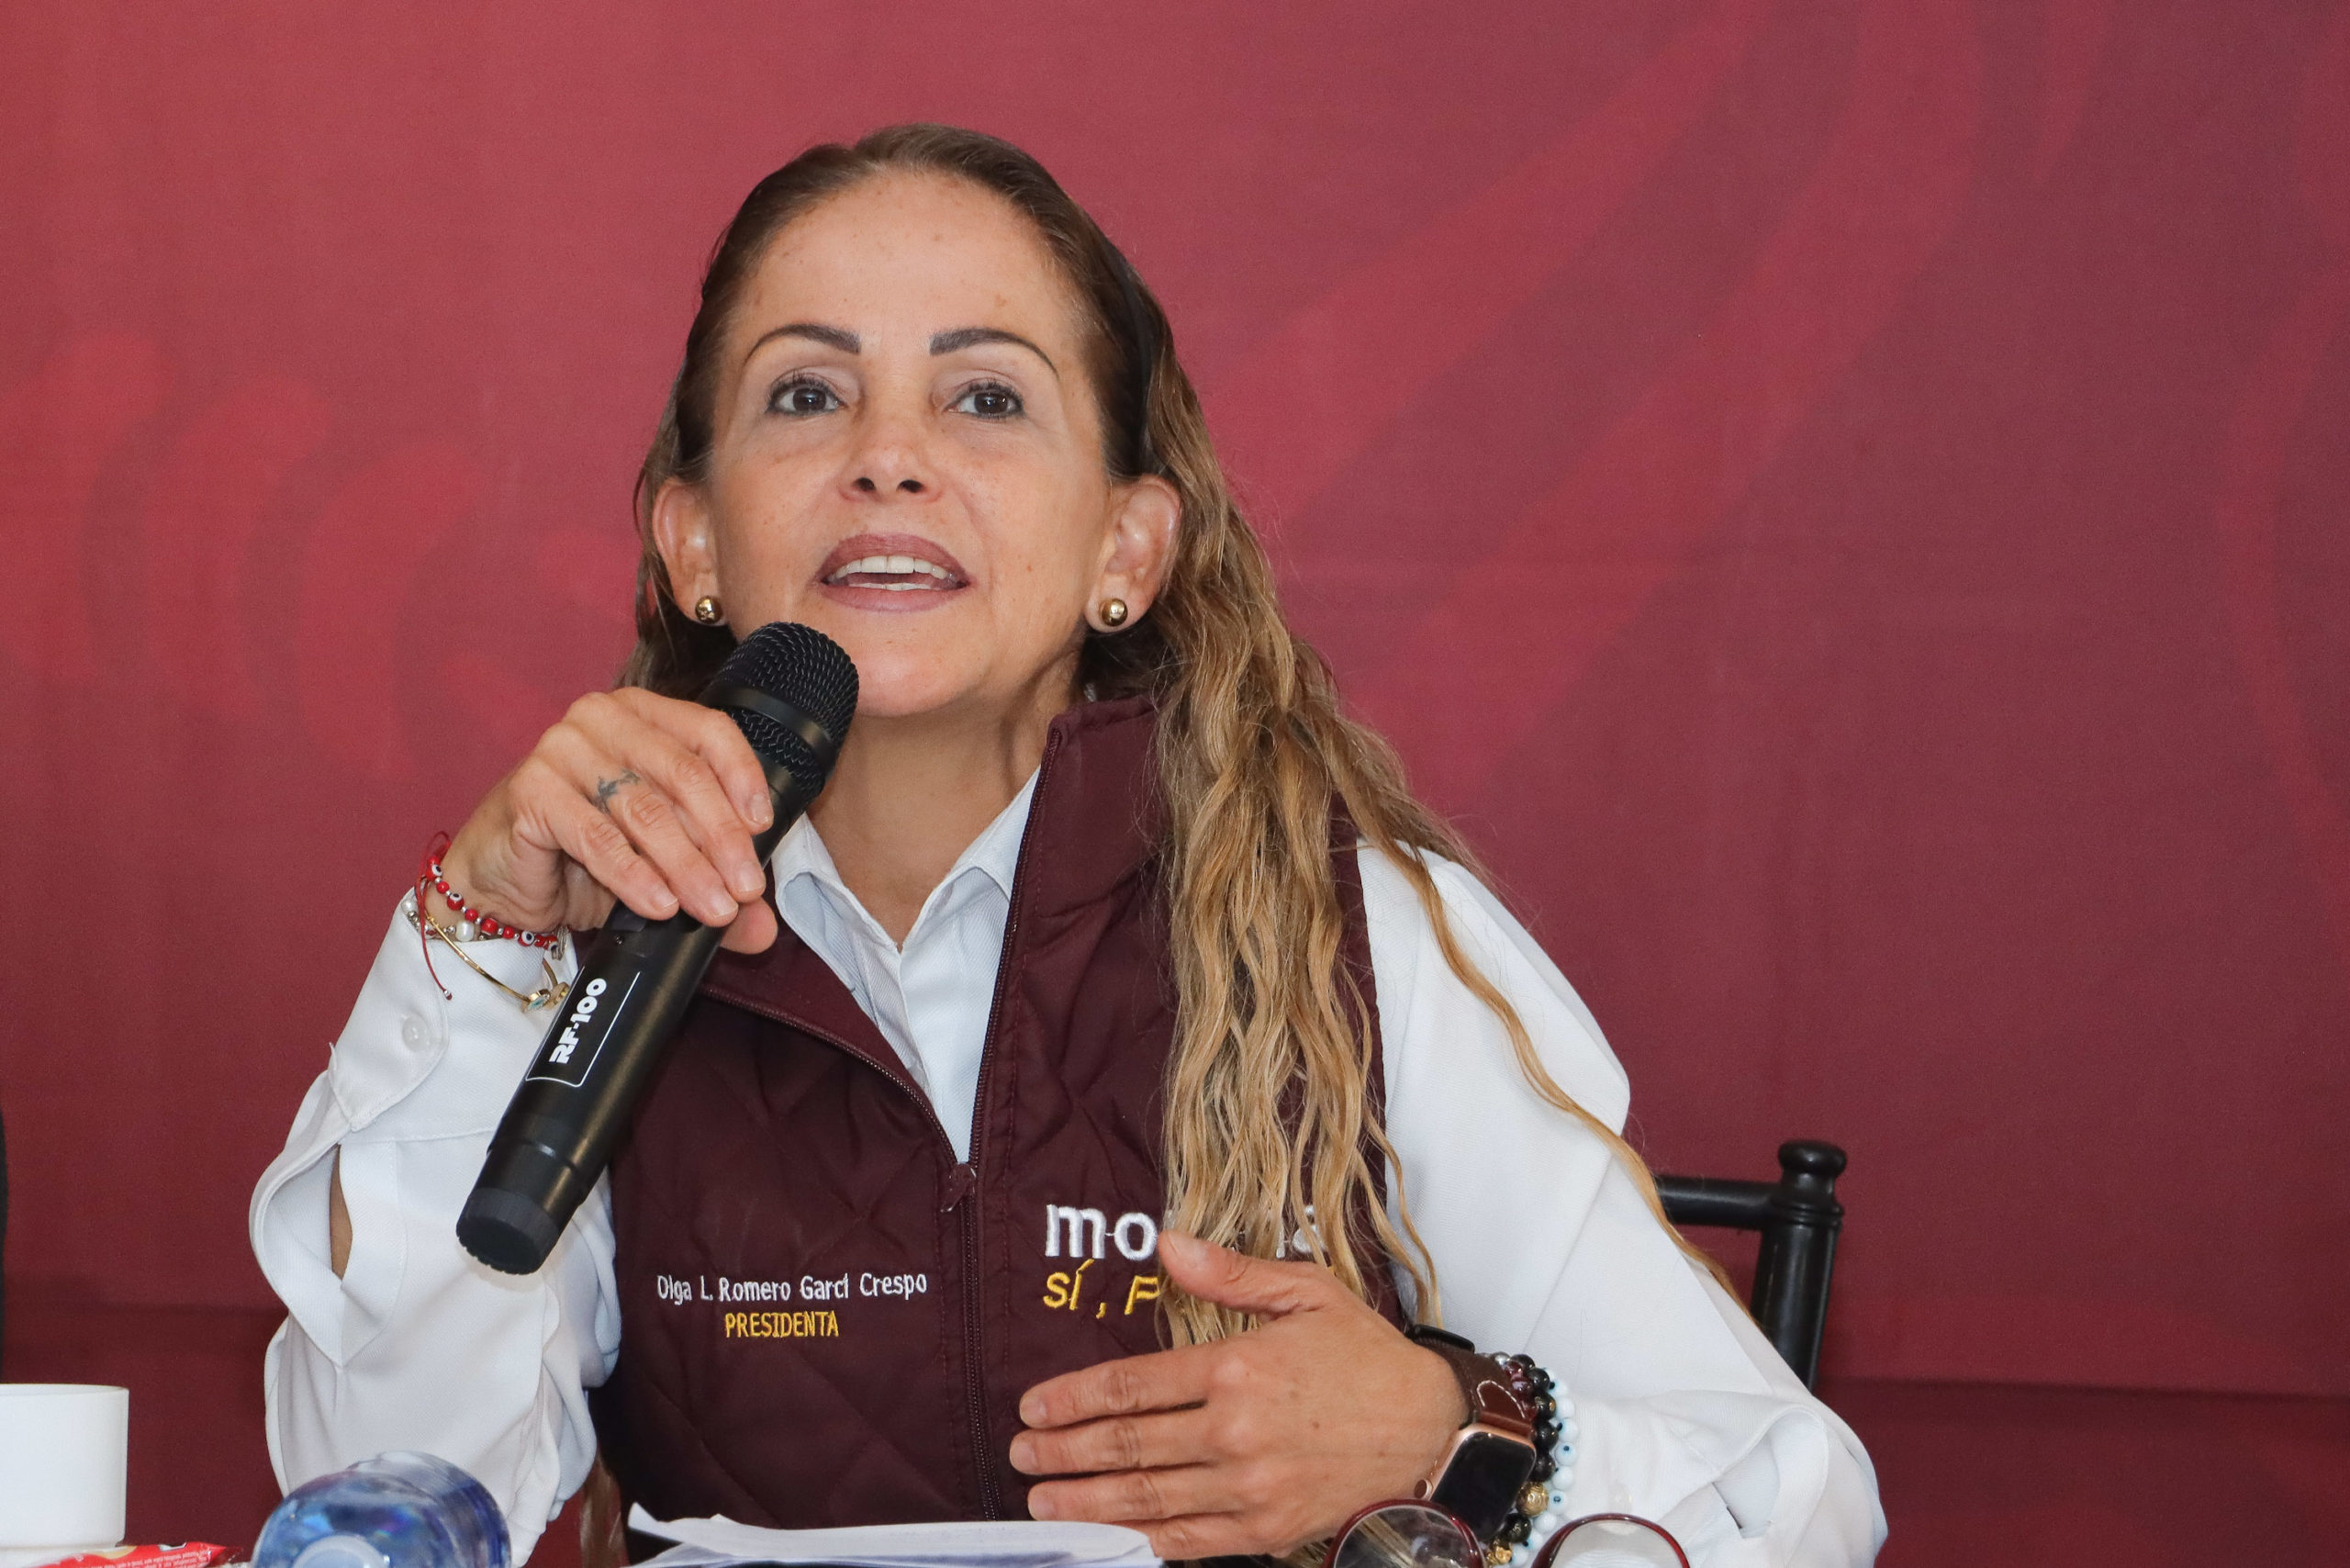 Notas que infunden miedo no han tenido efecto, dice Morena Puebla 